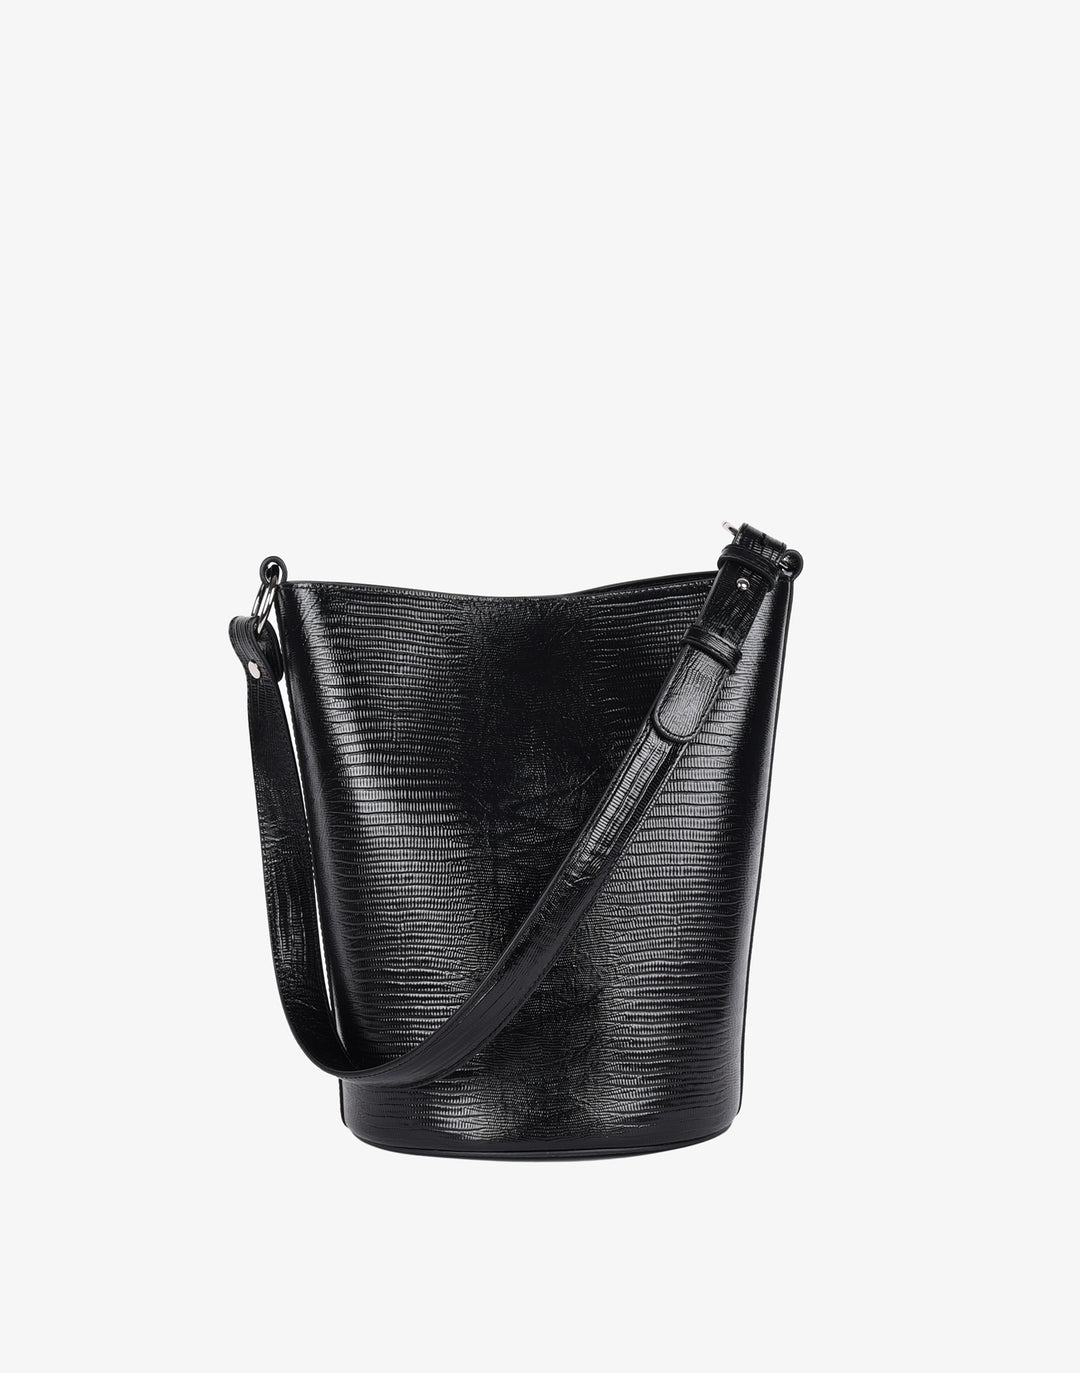 HYER GOODS - Mini Shoulder Bag Black Glazed Buffalo – Verte Mode